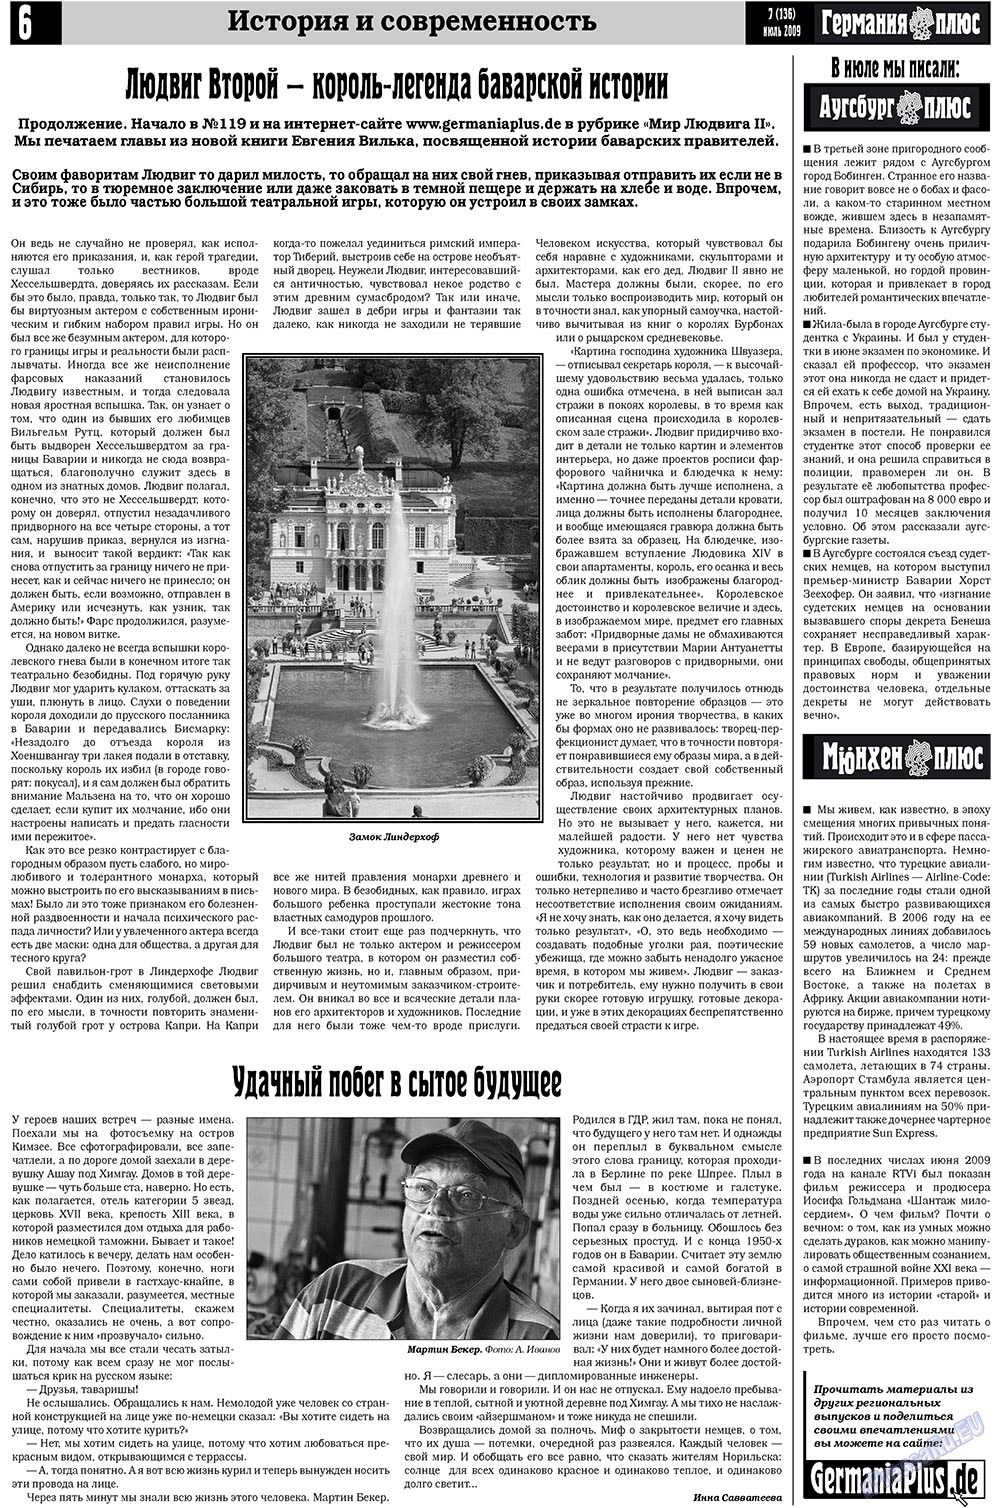 Германия плюс, газета. 2009 №7 стр.6